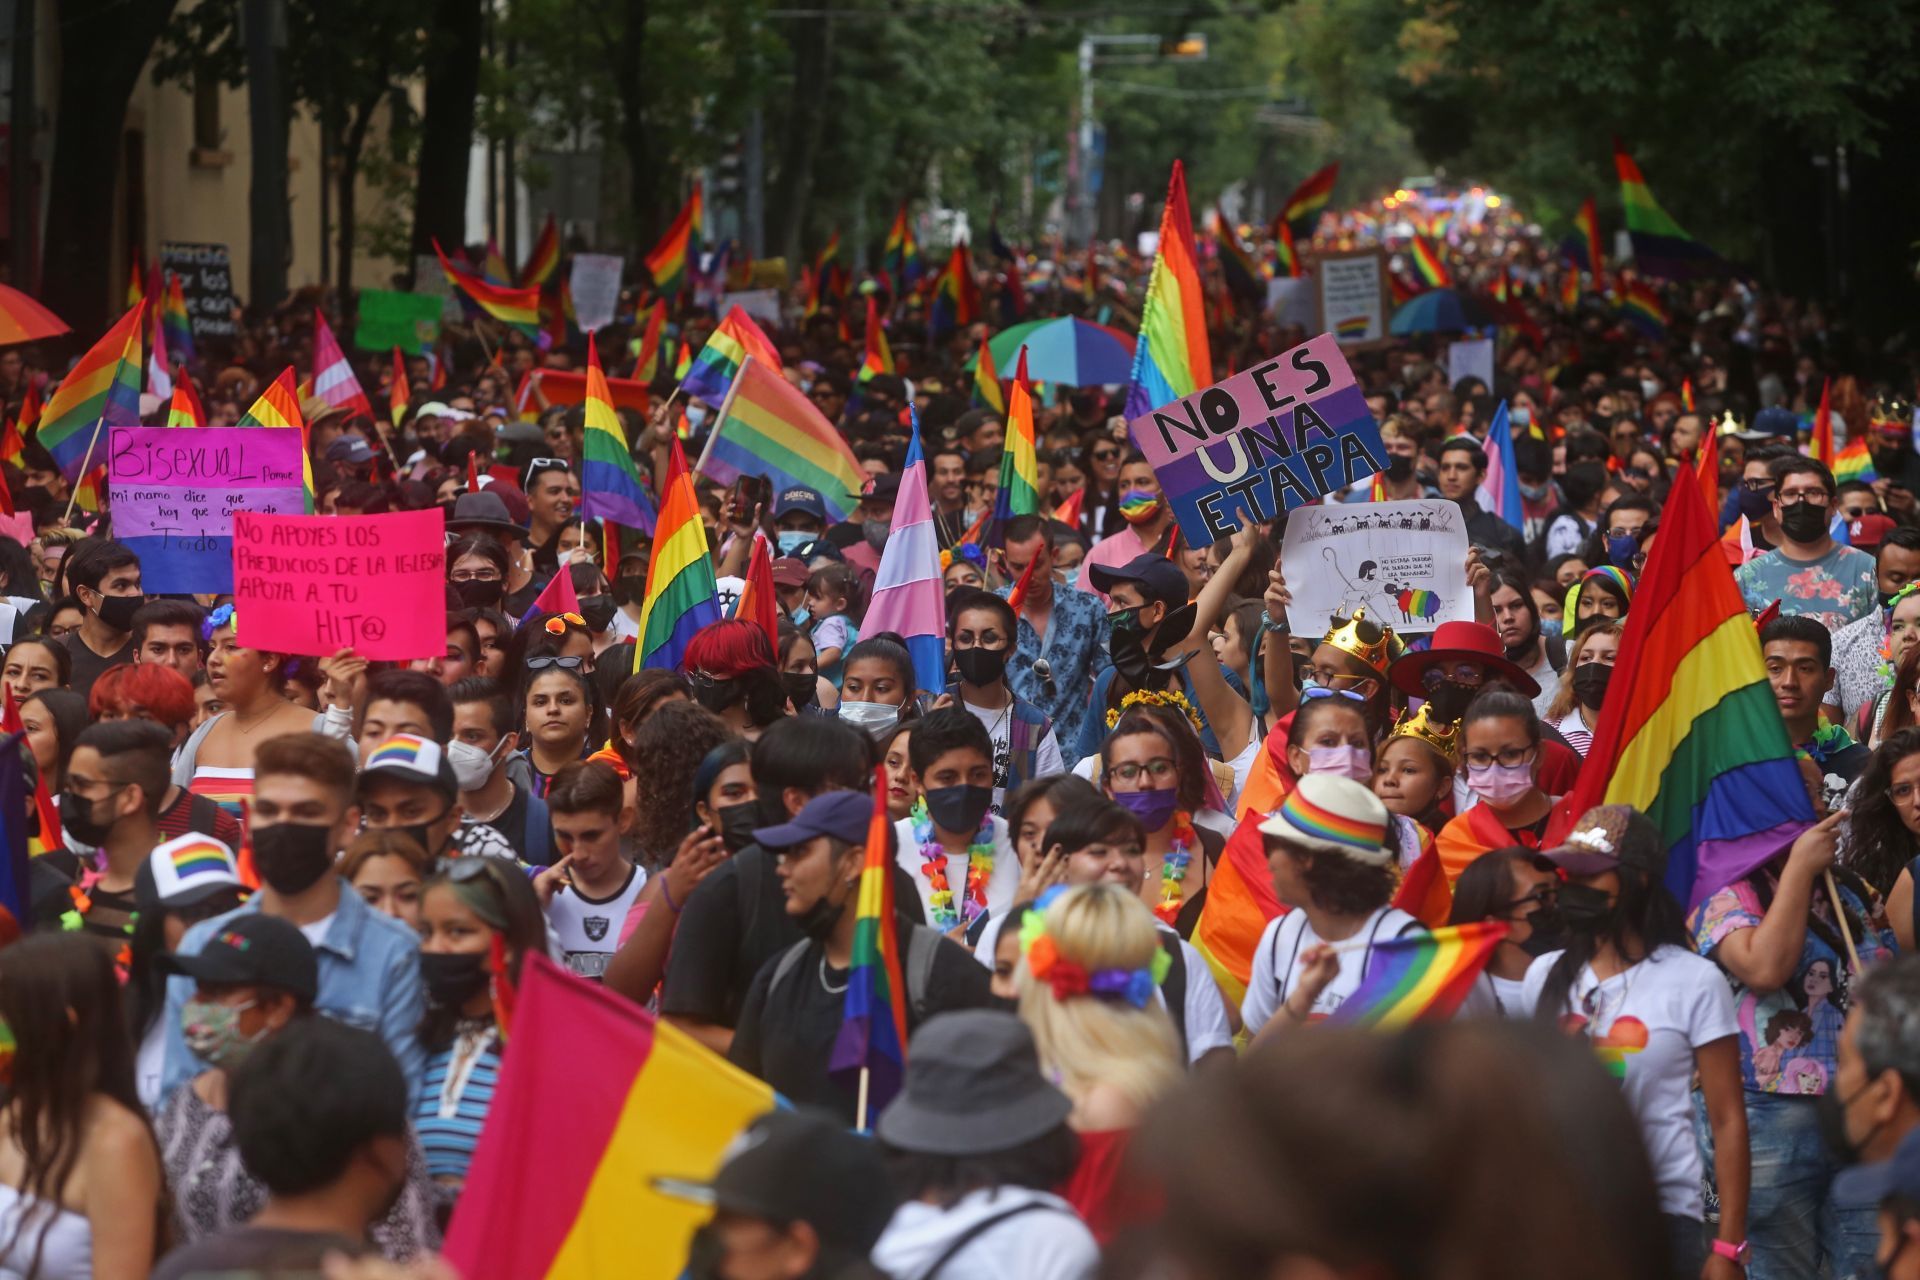 Marcha LGBT+ 2021: Te contamos todos los detalles sobre este evento en la CDMX